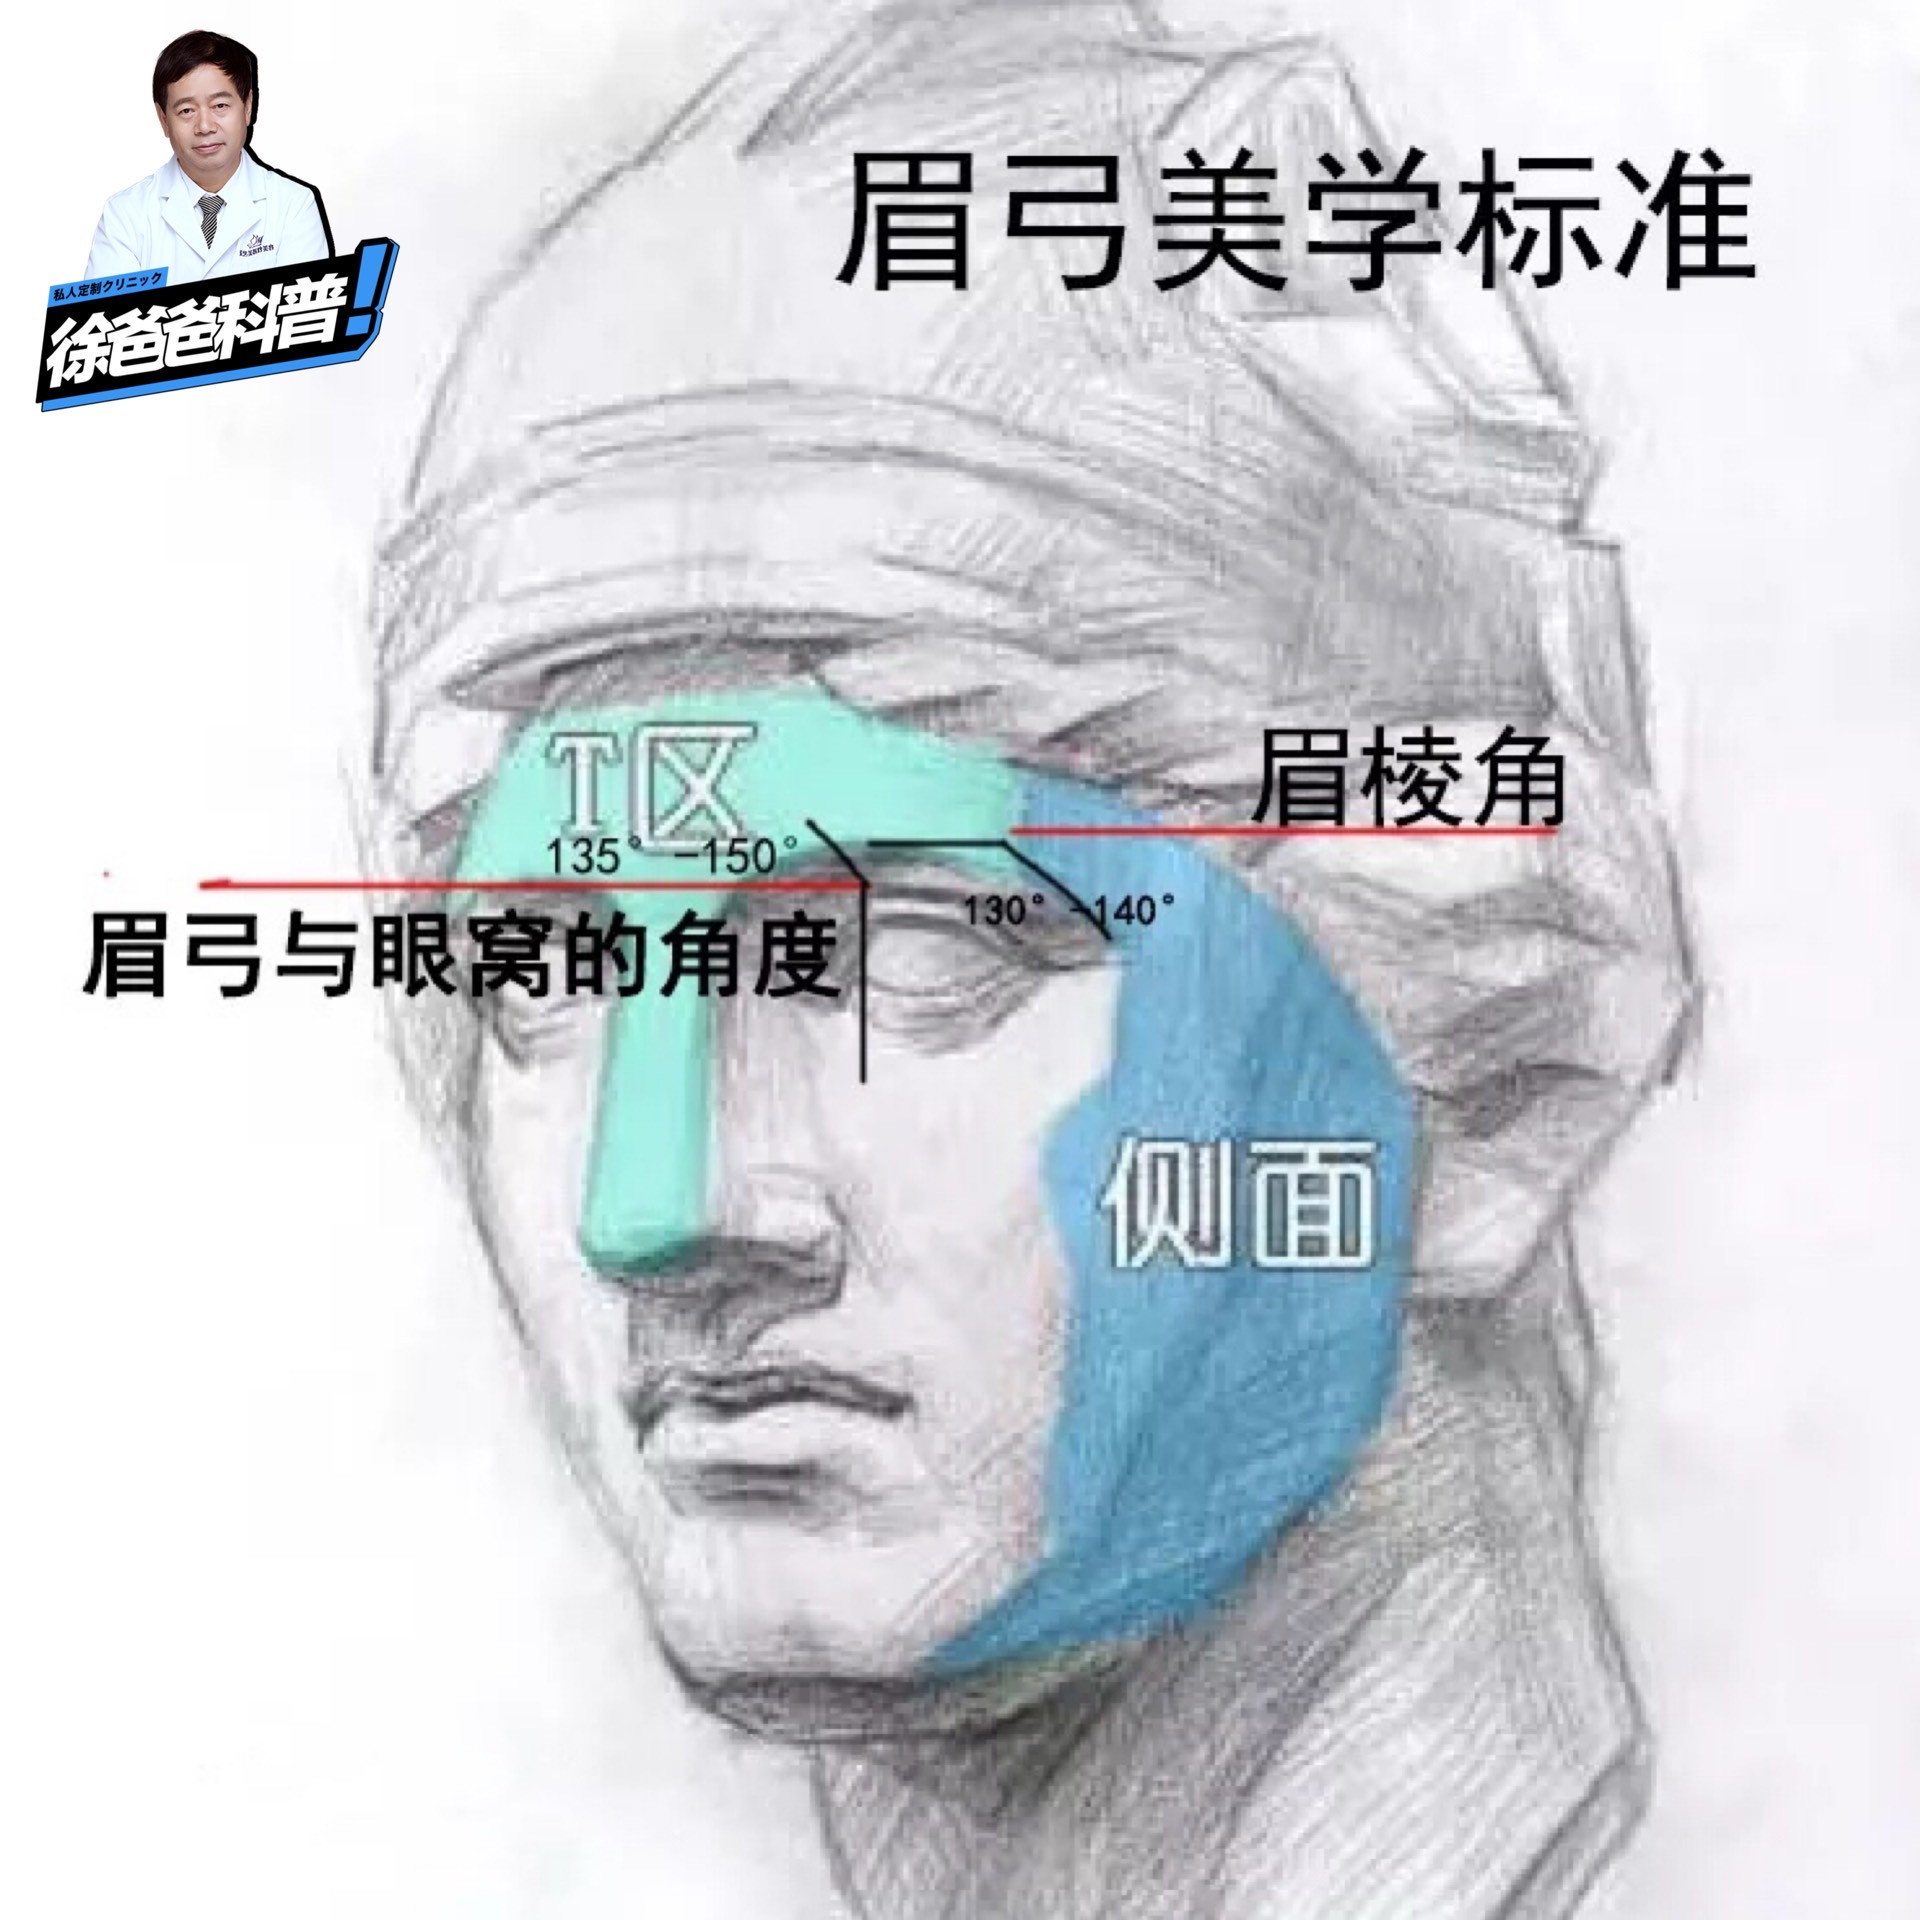 眉弓解剖位置图片